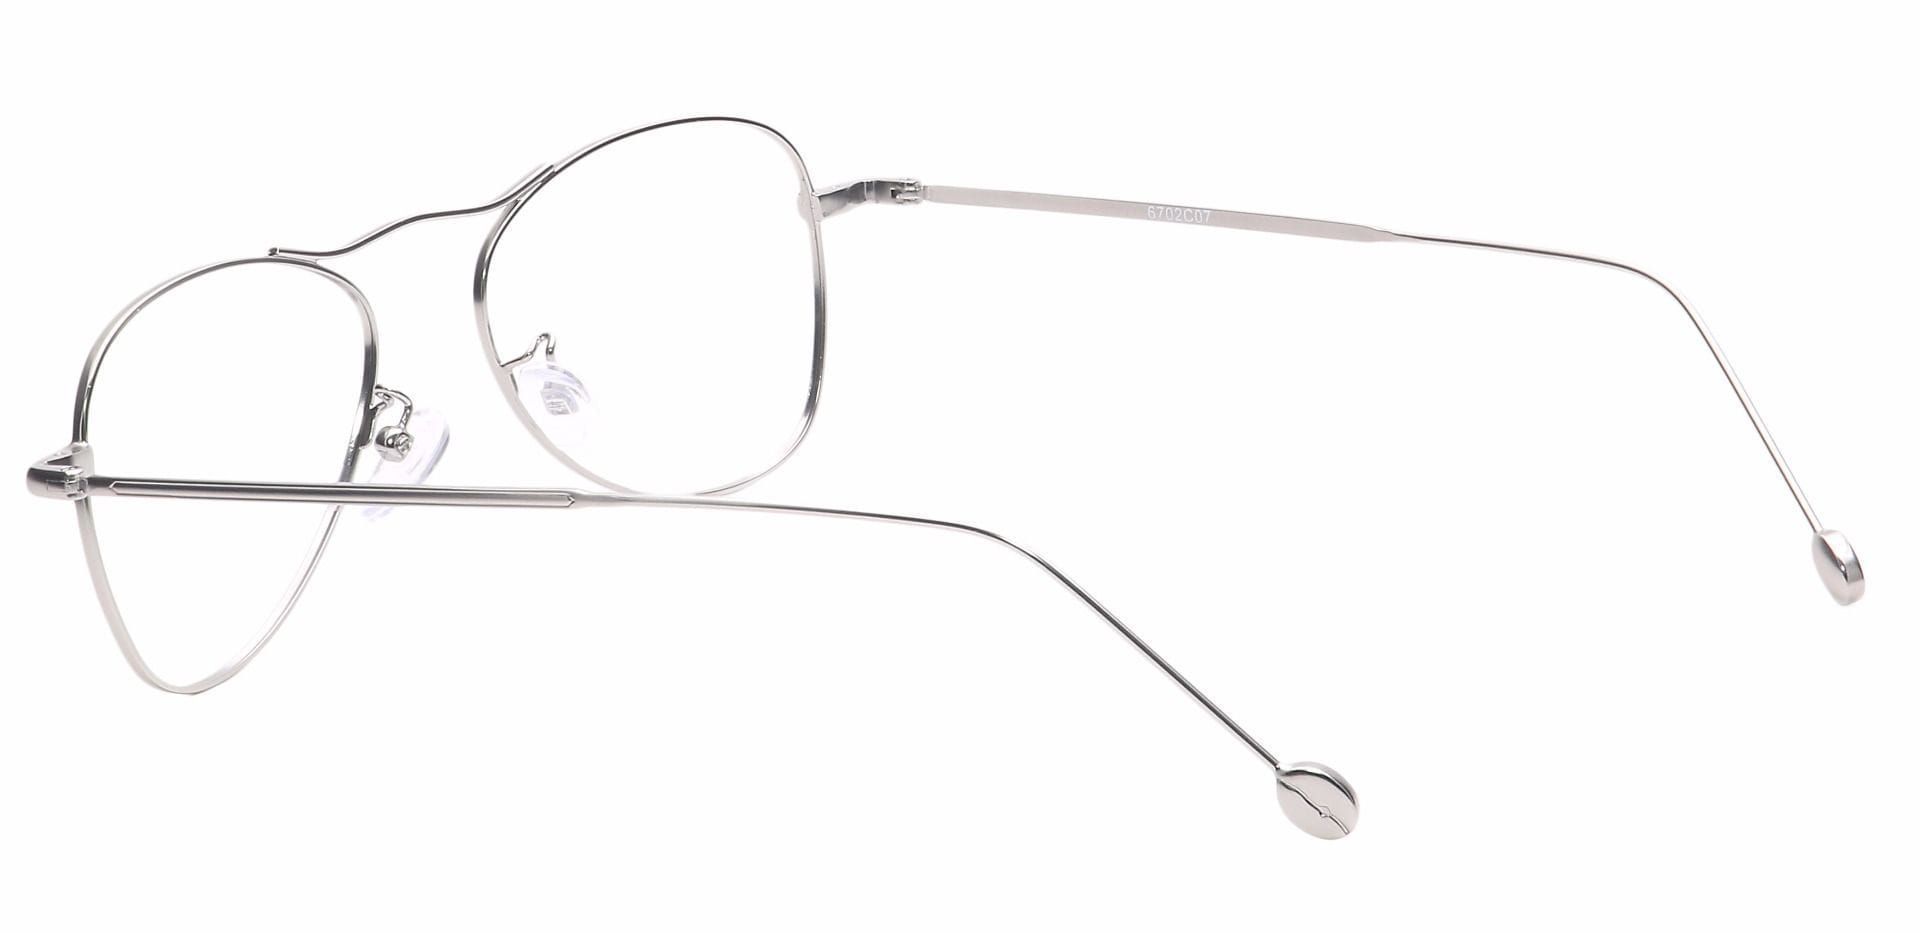 Brio Aviator Reading Glasses - Silver